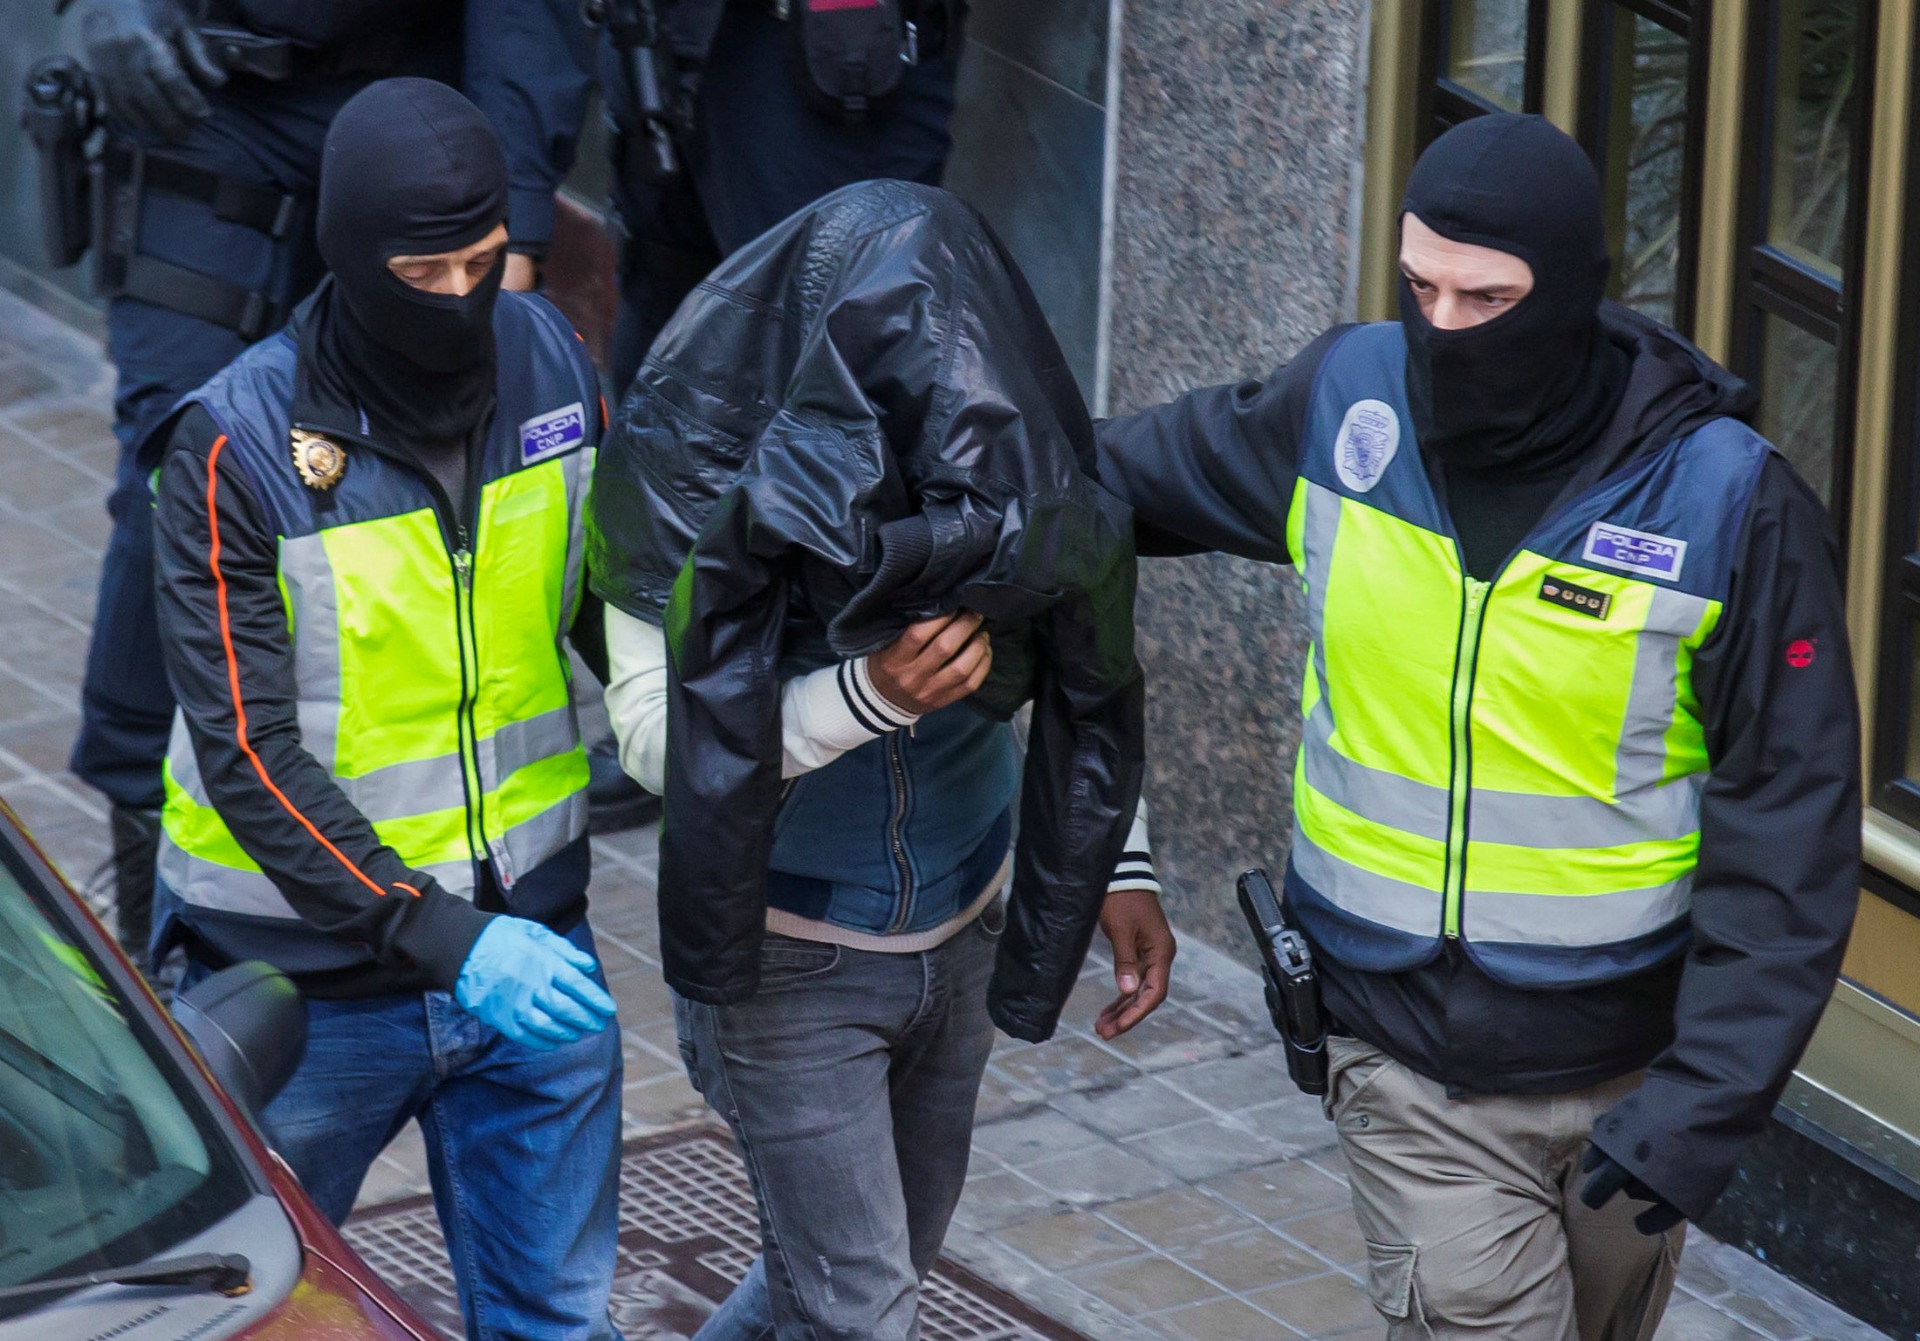 Arrestados un marroquí en Vitoria y una mujer en Alicante relacionados con el Daesh